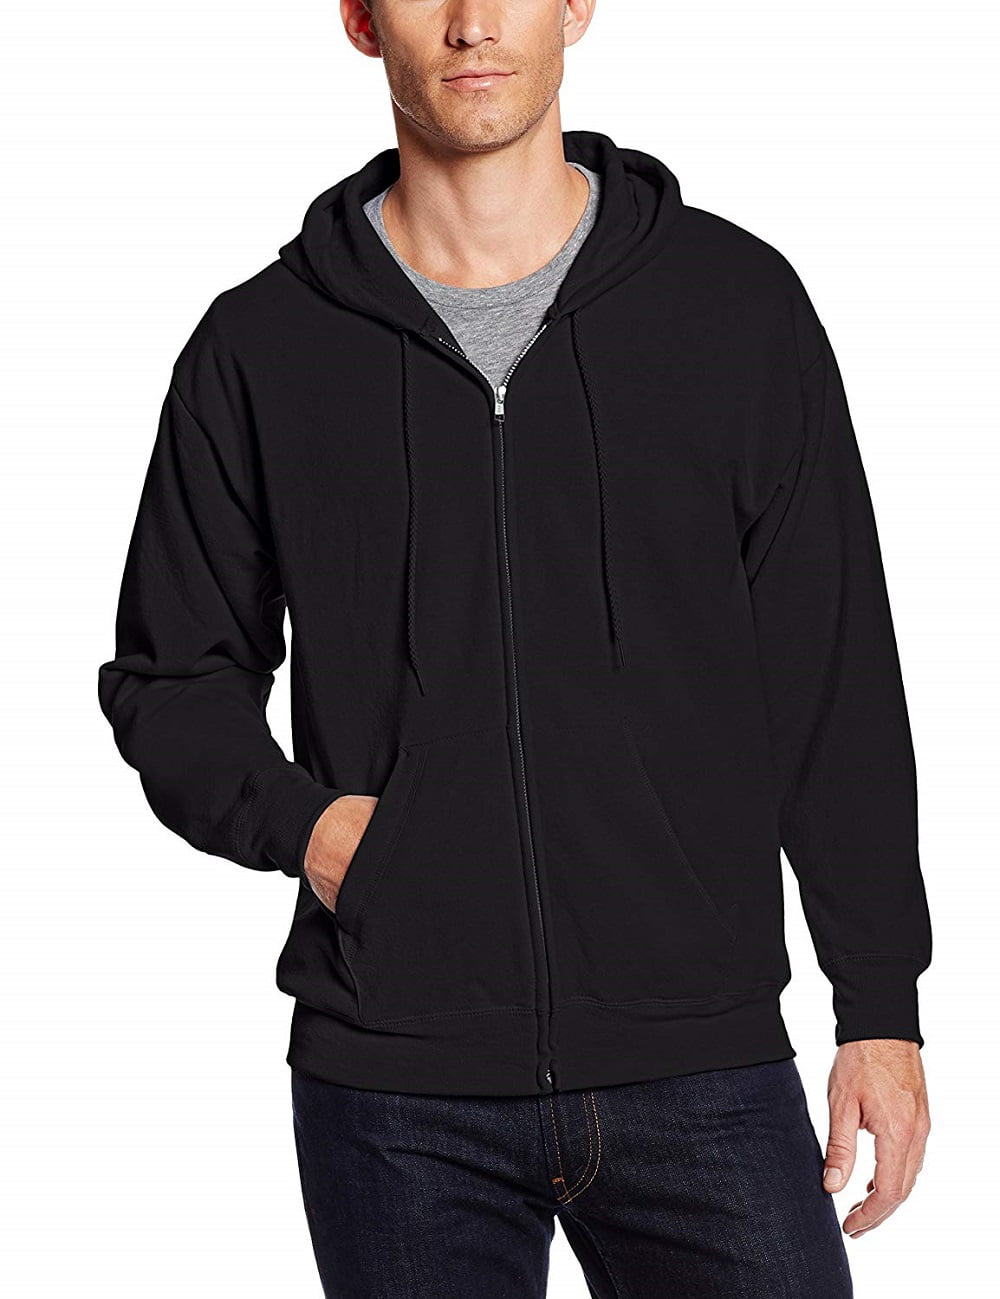 XL Mens Plain Zipper Hoodies American Zip Up Fleece Sweatshirts Jumper Top M